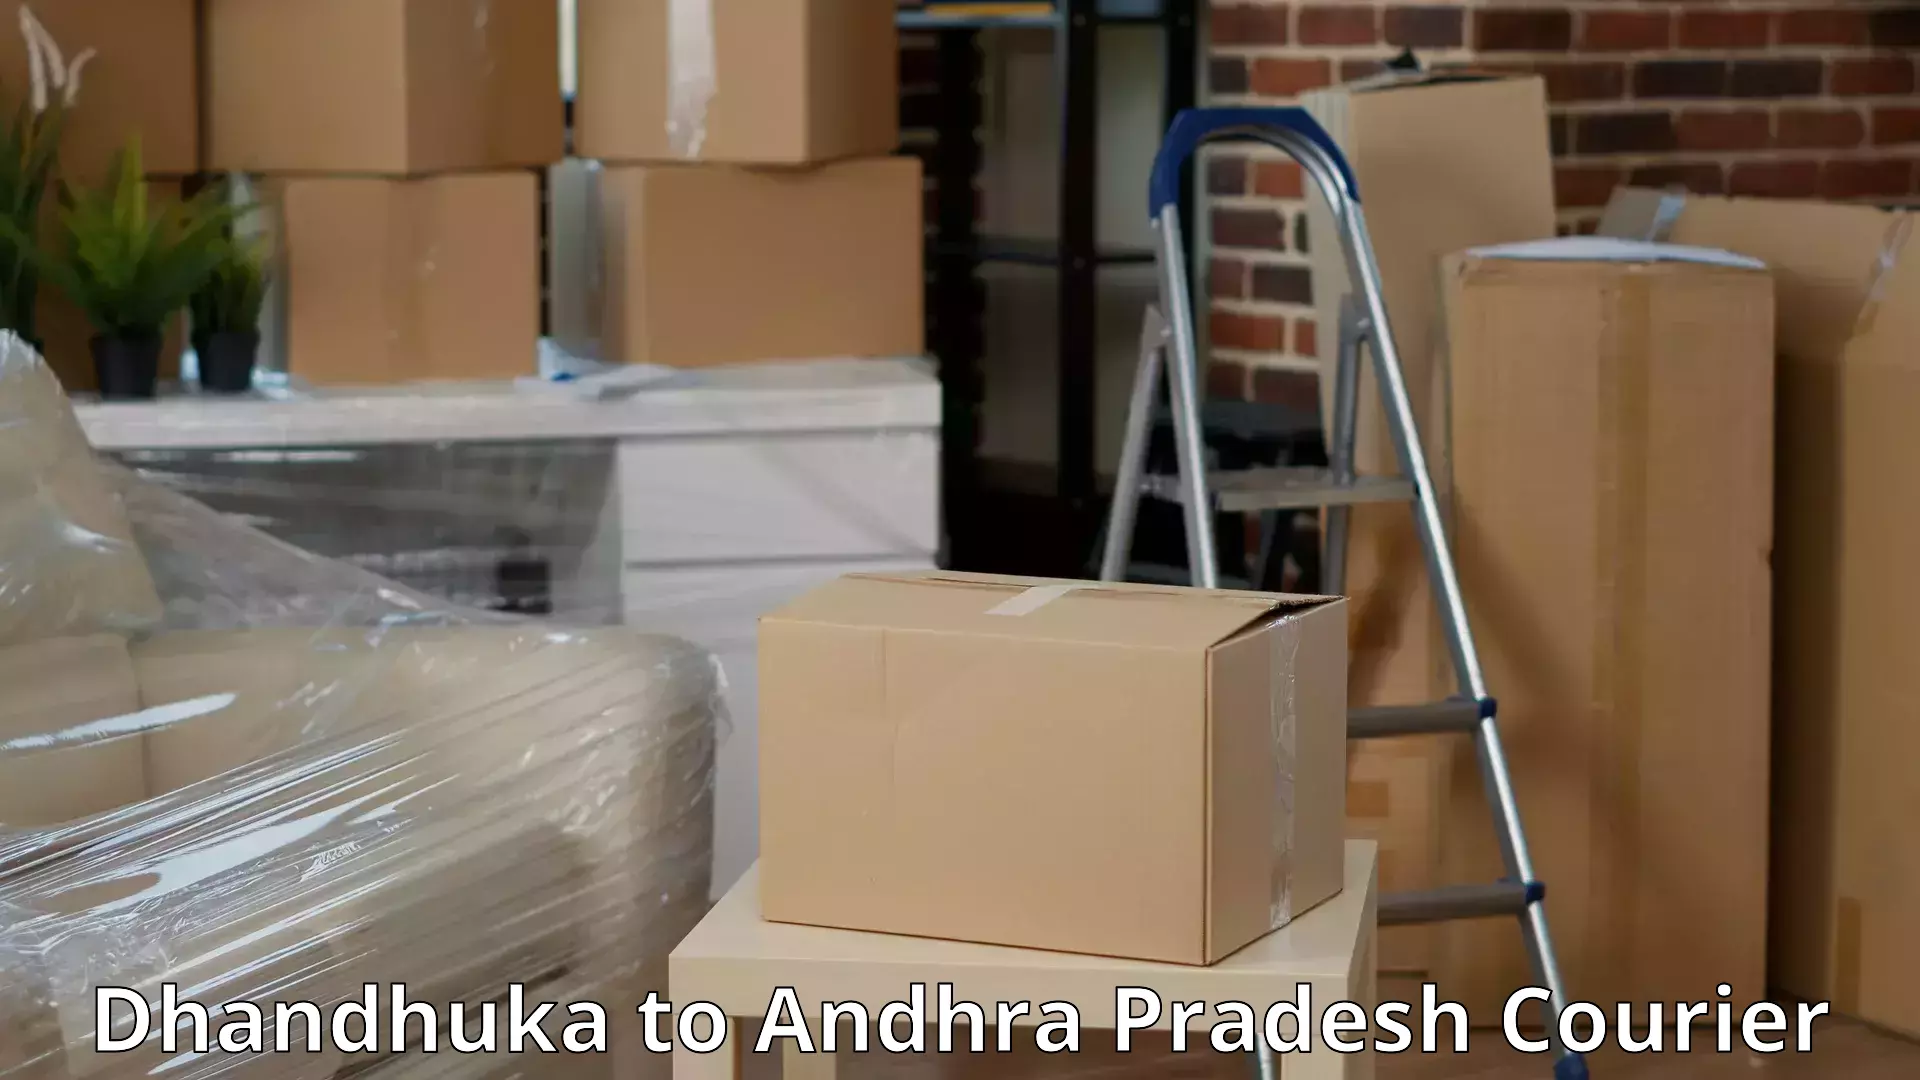 Skilled furniture transporters Dhandhuka to Andhra Pradesh